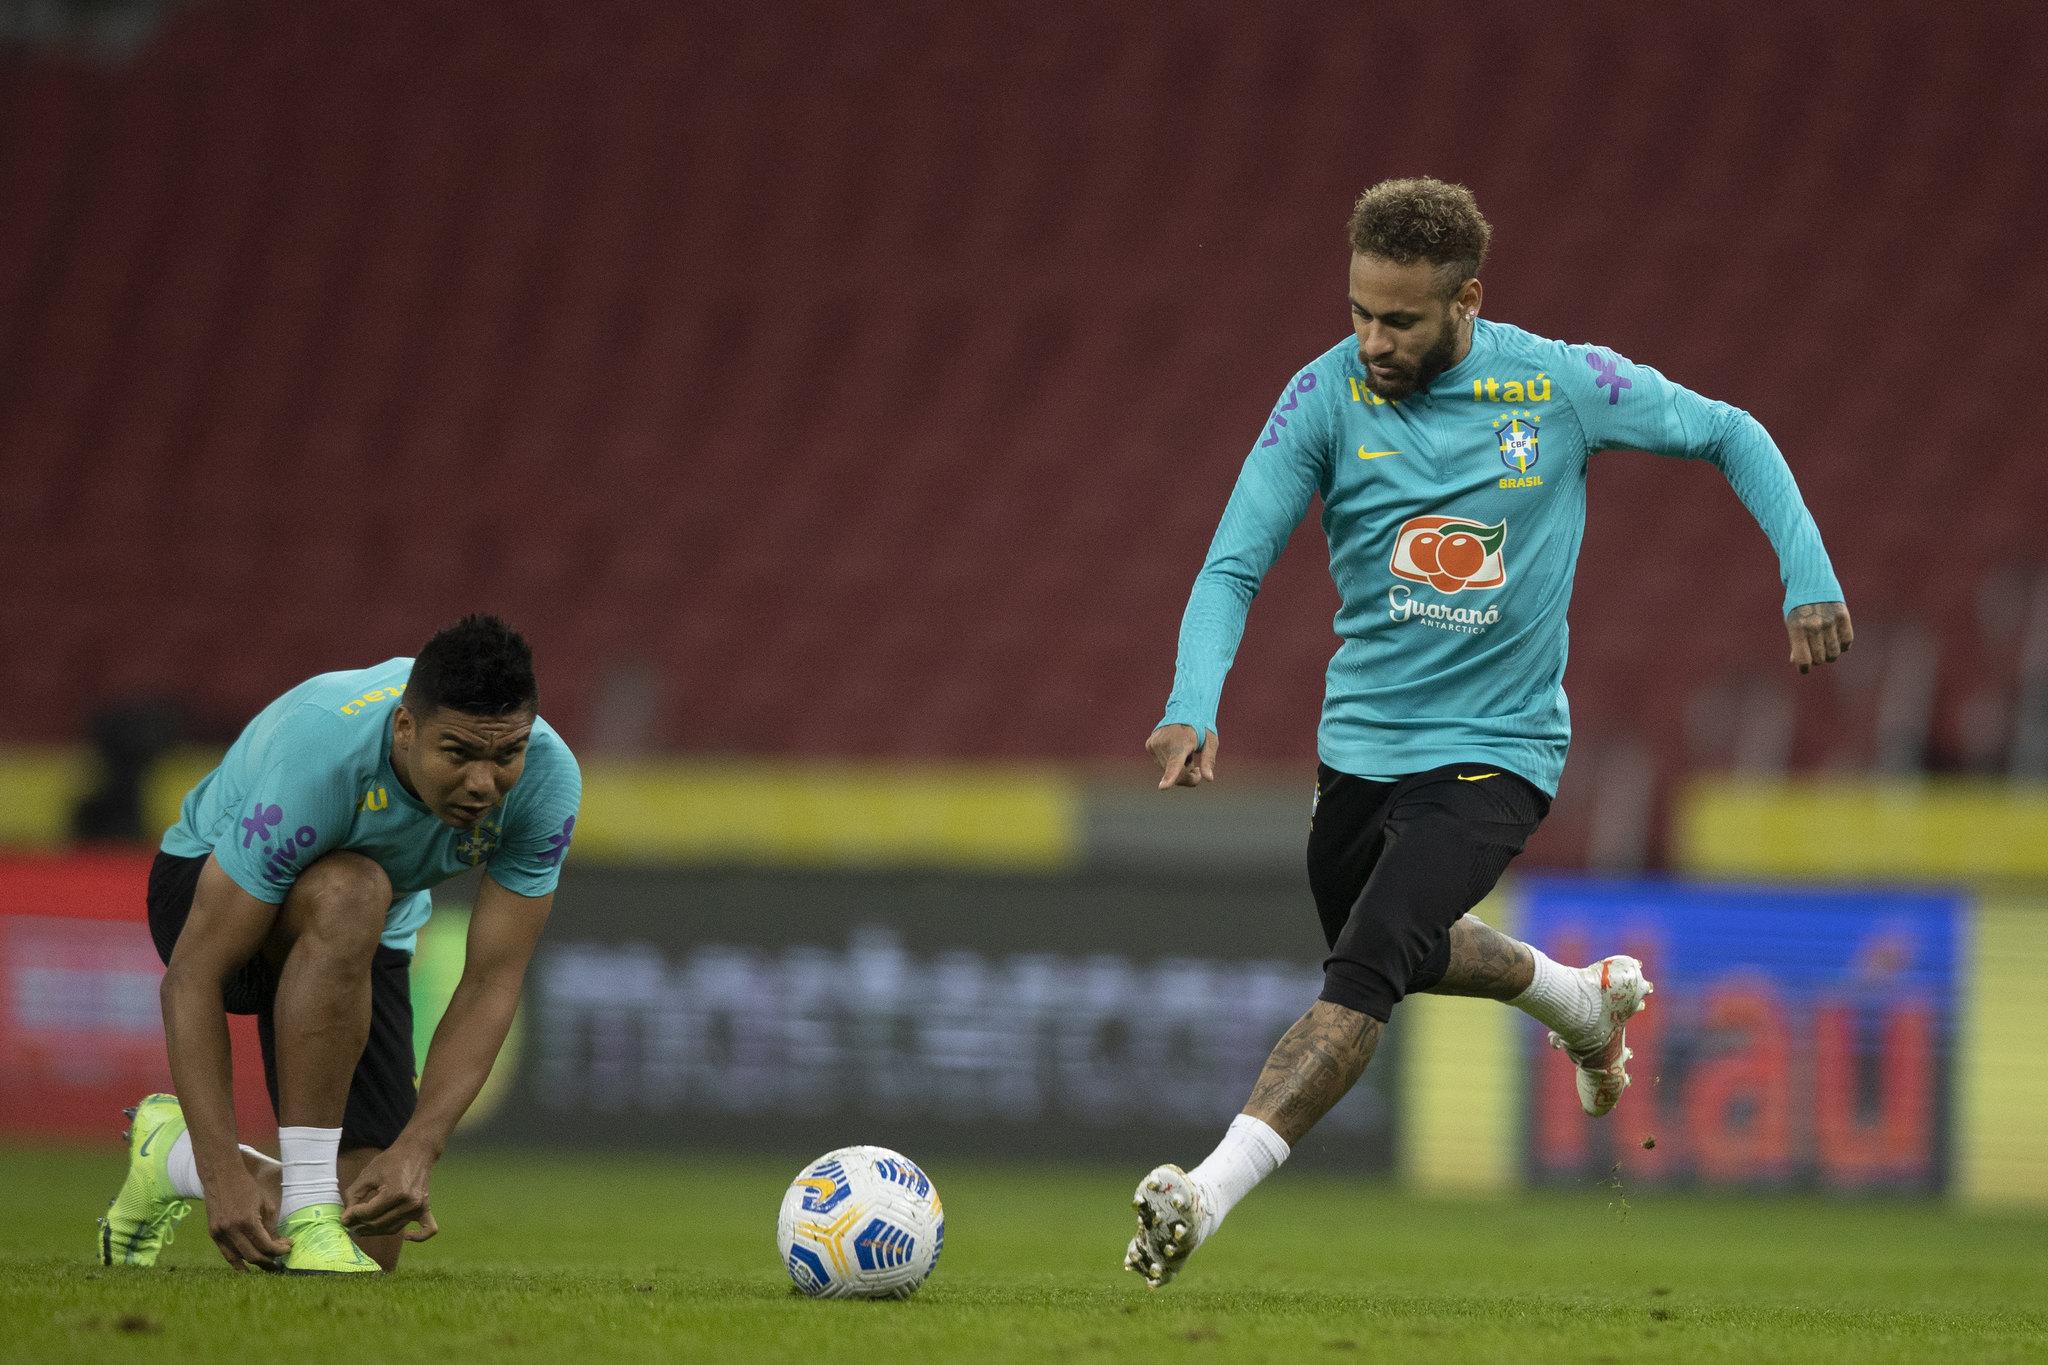 Neymar e Casemiro treinam pela Seleção Brasileira